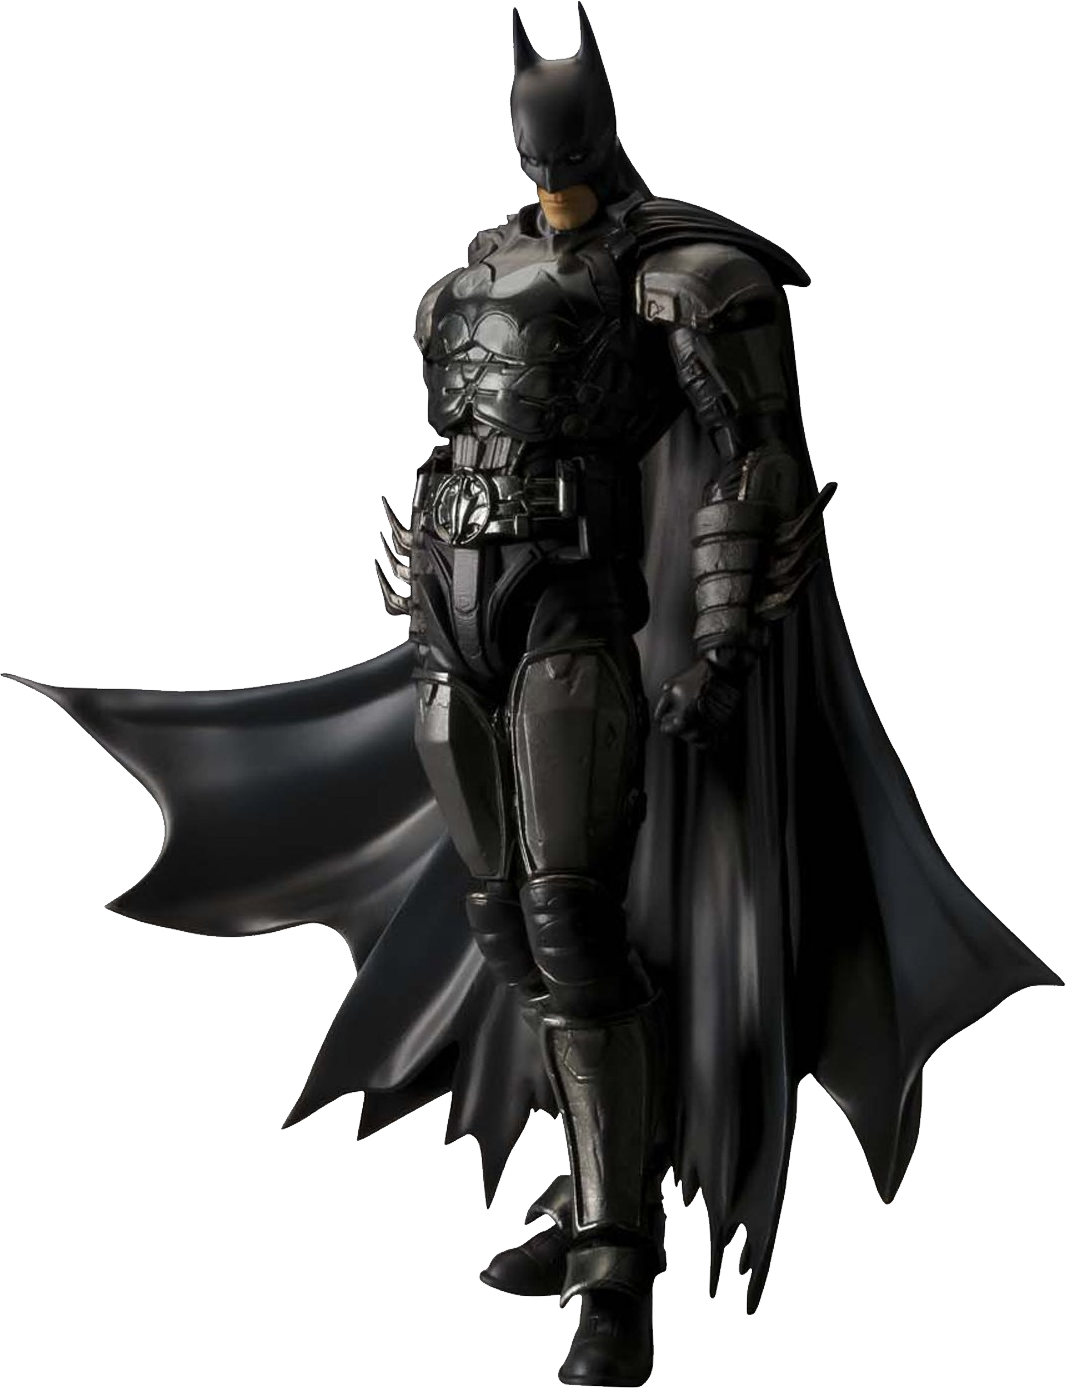 Immagine Trasparente di Batman Arkham Knight